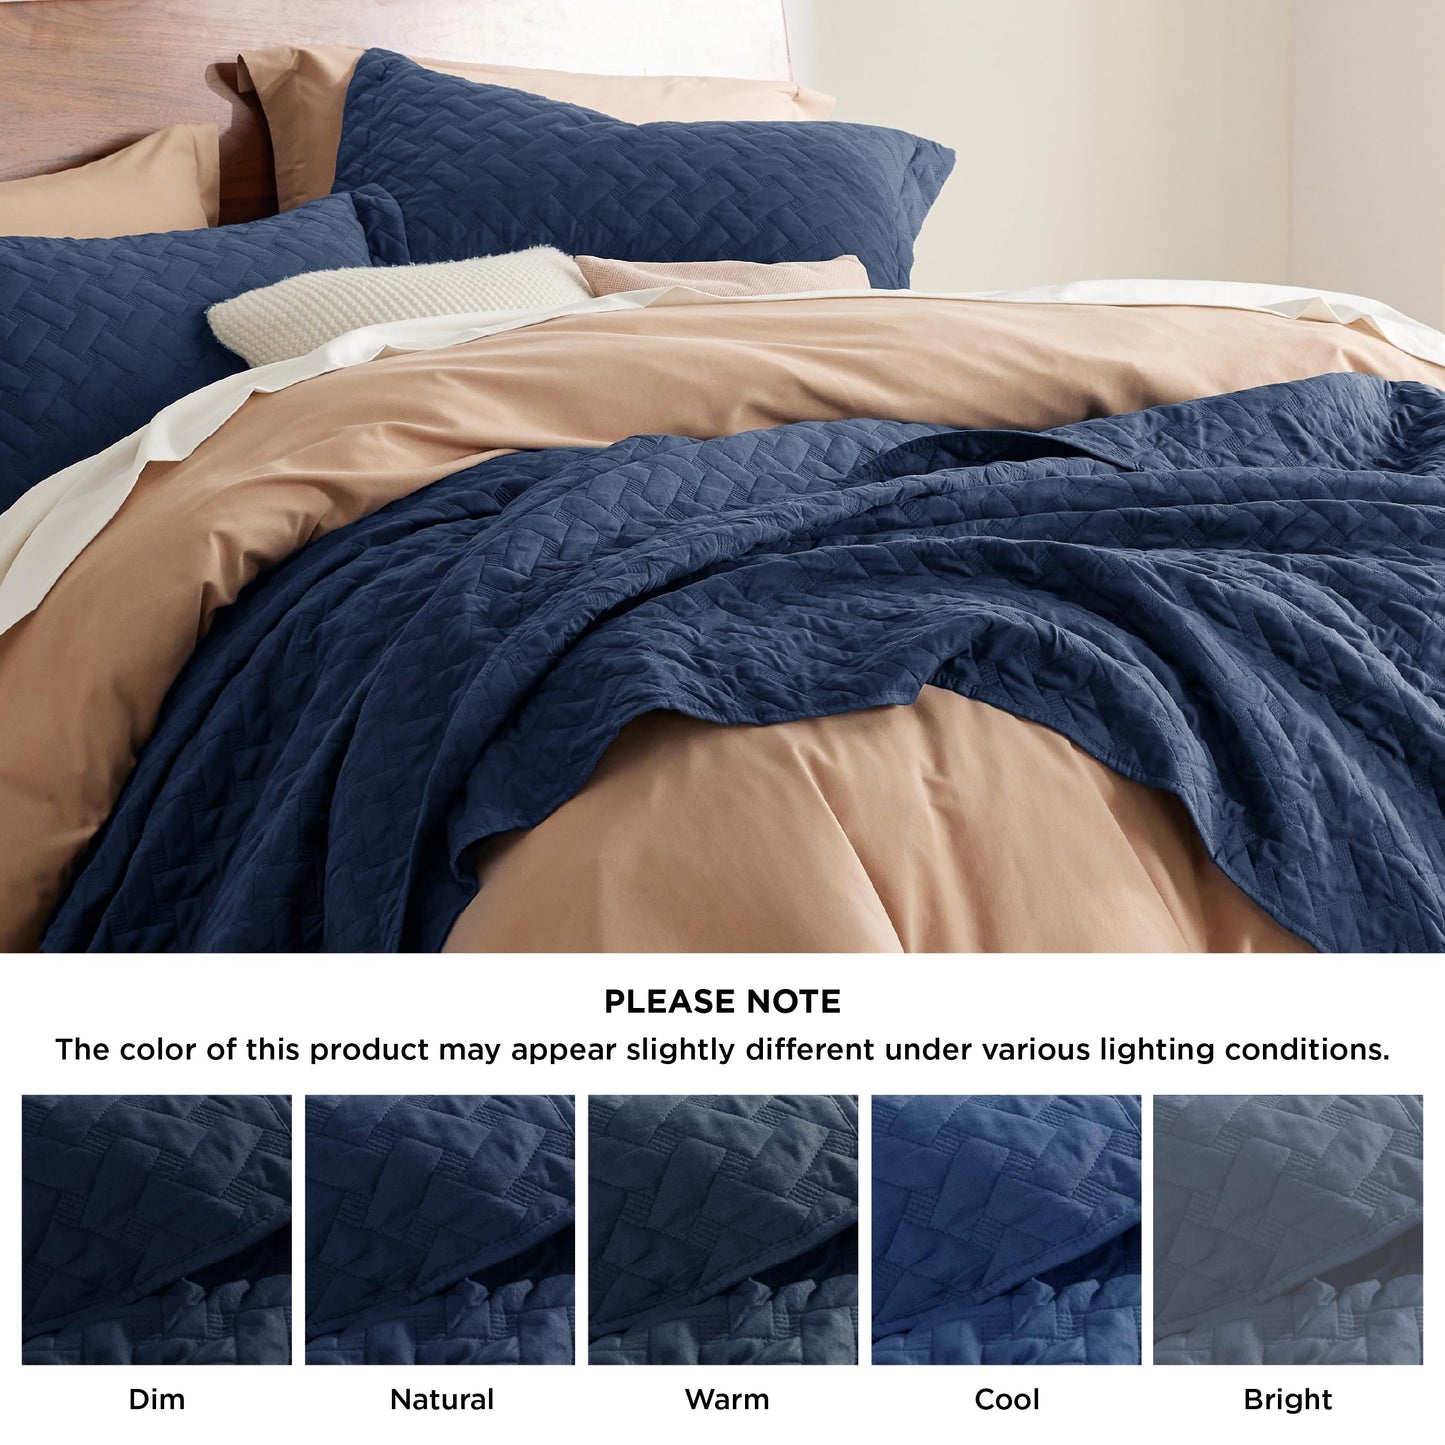 Bedsure Queen Quilt Bedding Set - Lightweight Summer Quilt Full/Queen - Navy Bedspreads Queen Size - Bedding Coverlets for All Seasons (Includes 1 Quilt, 2 Pillow Shams)